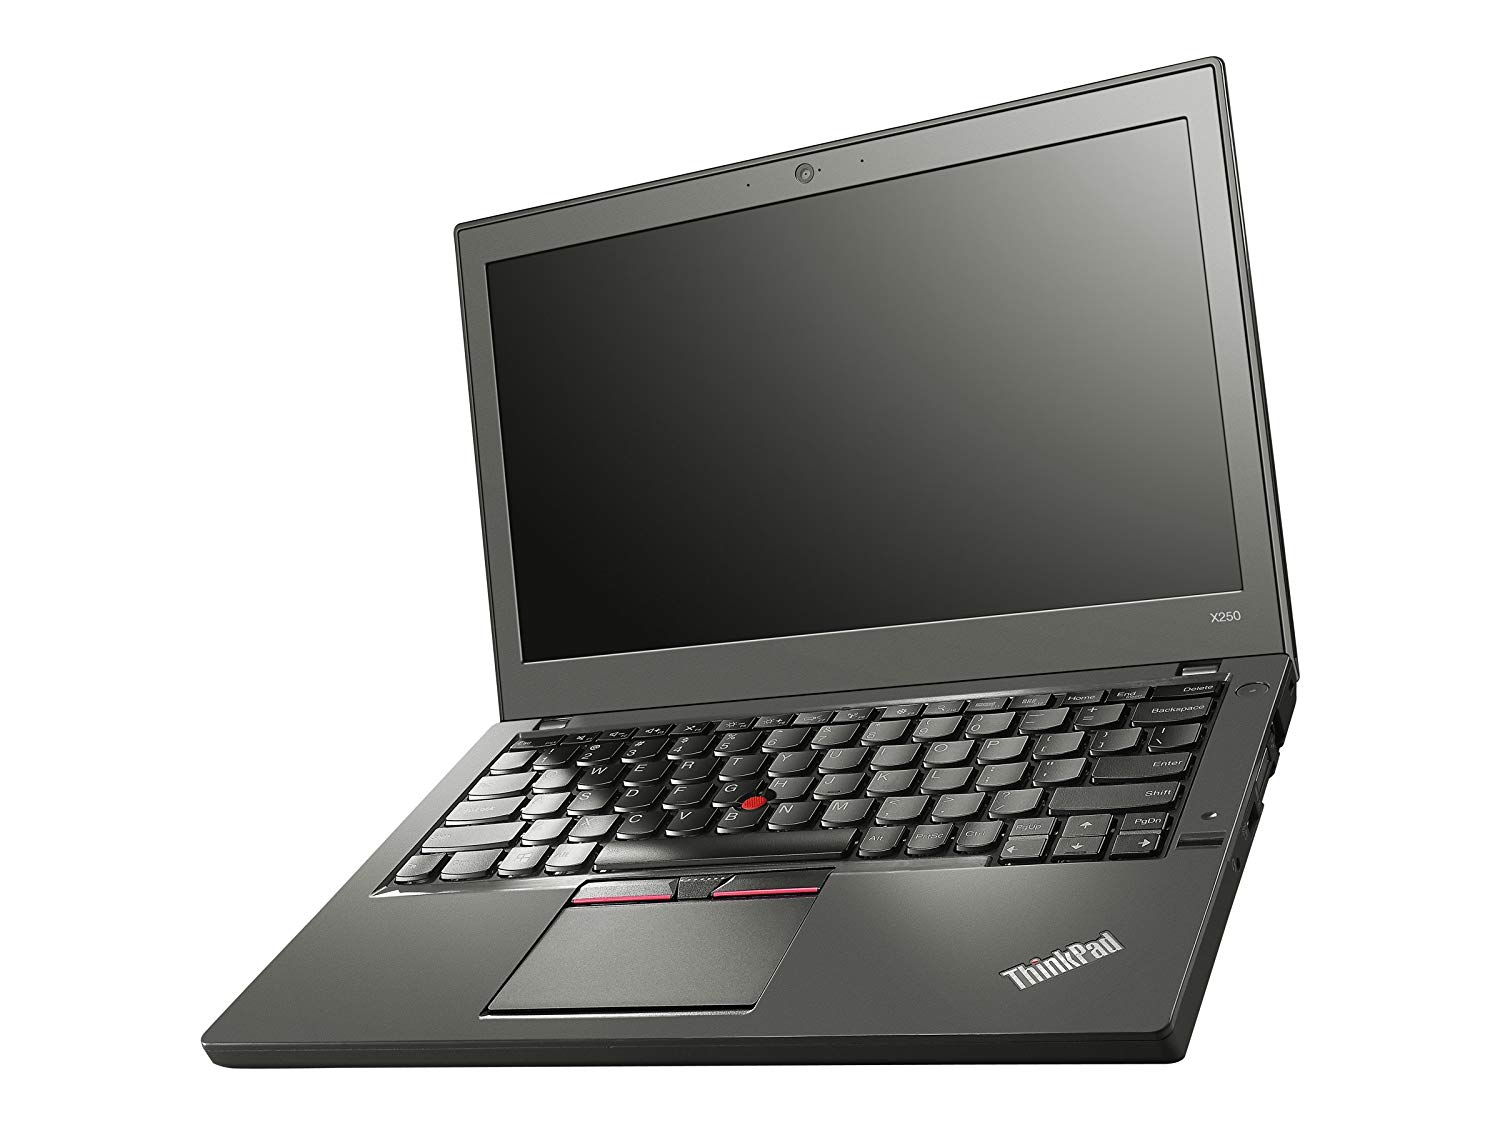 LENOVO ThinkPad X250